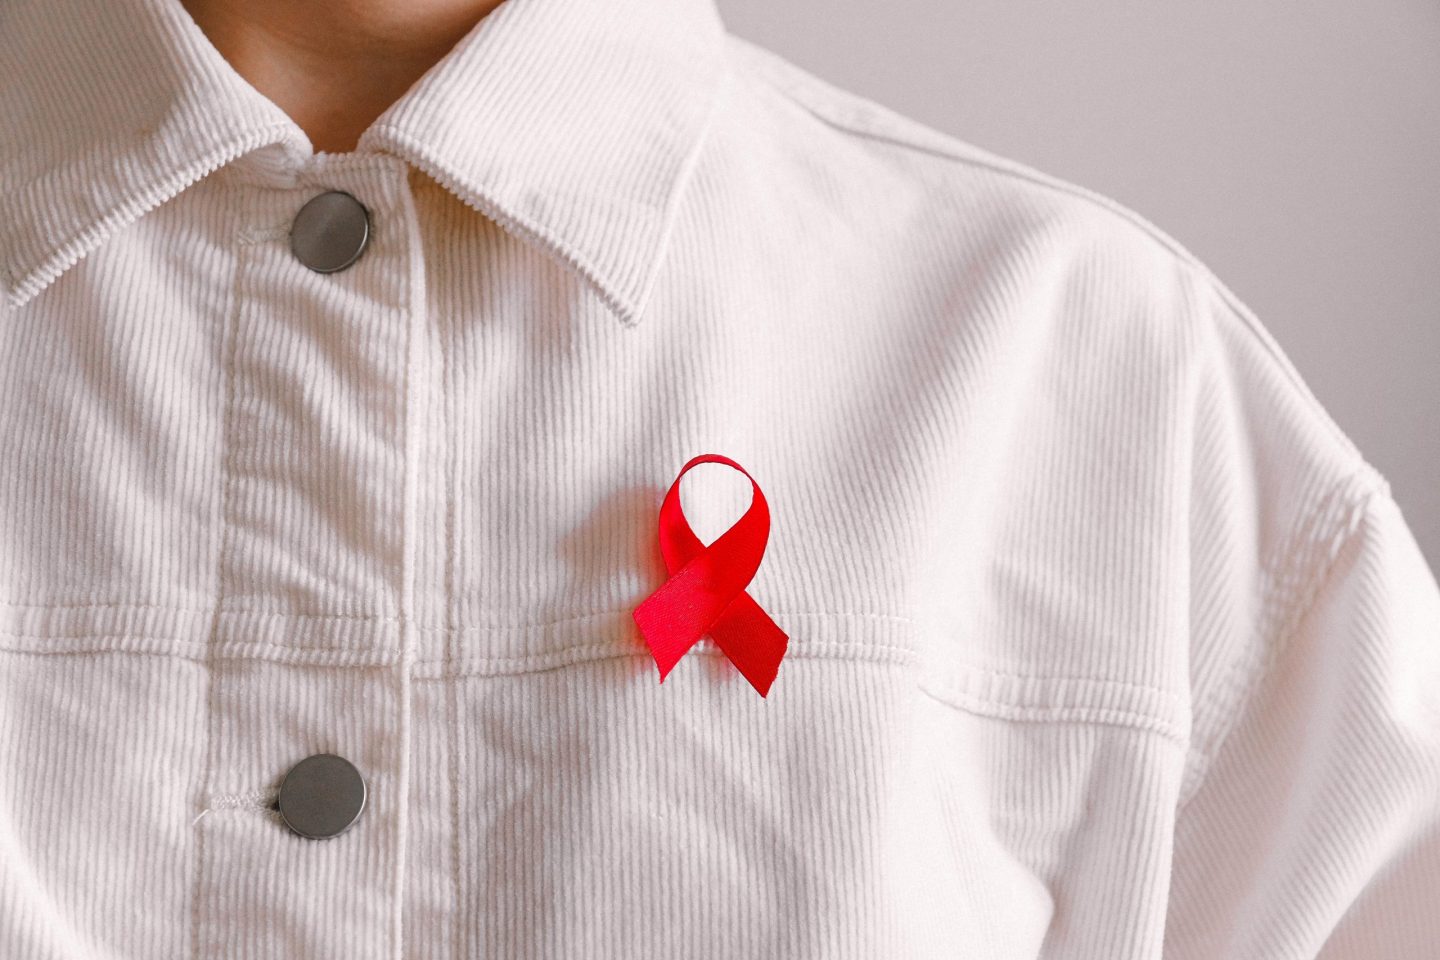 Zum Welt-Aids-Tag: Warum die Ohhh! Foundation HIV umbenennen möchte